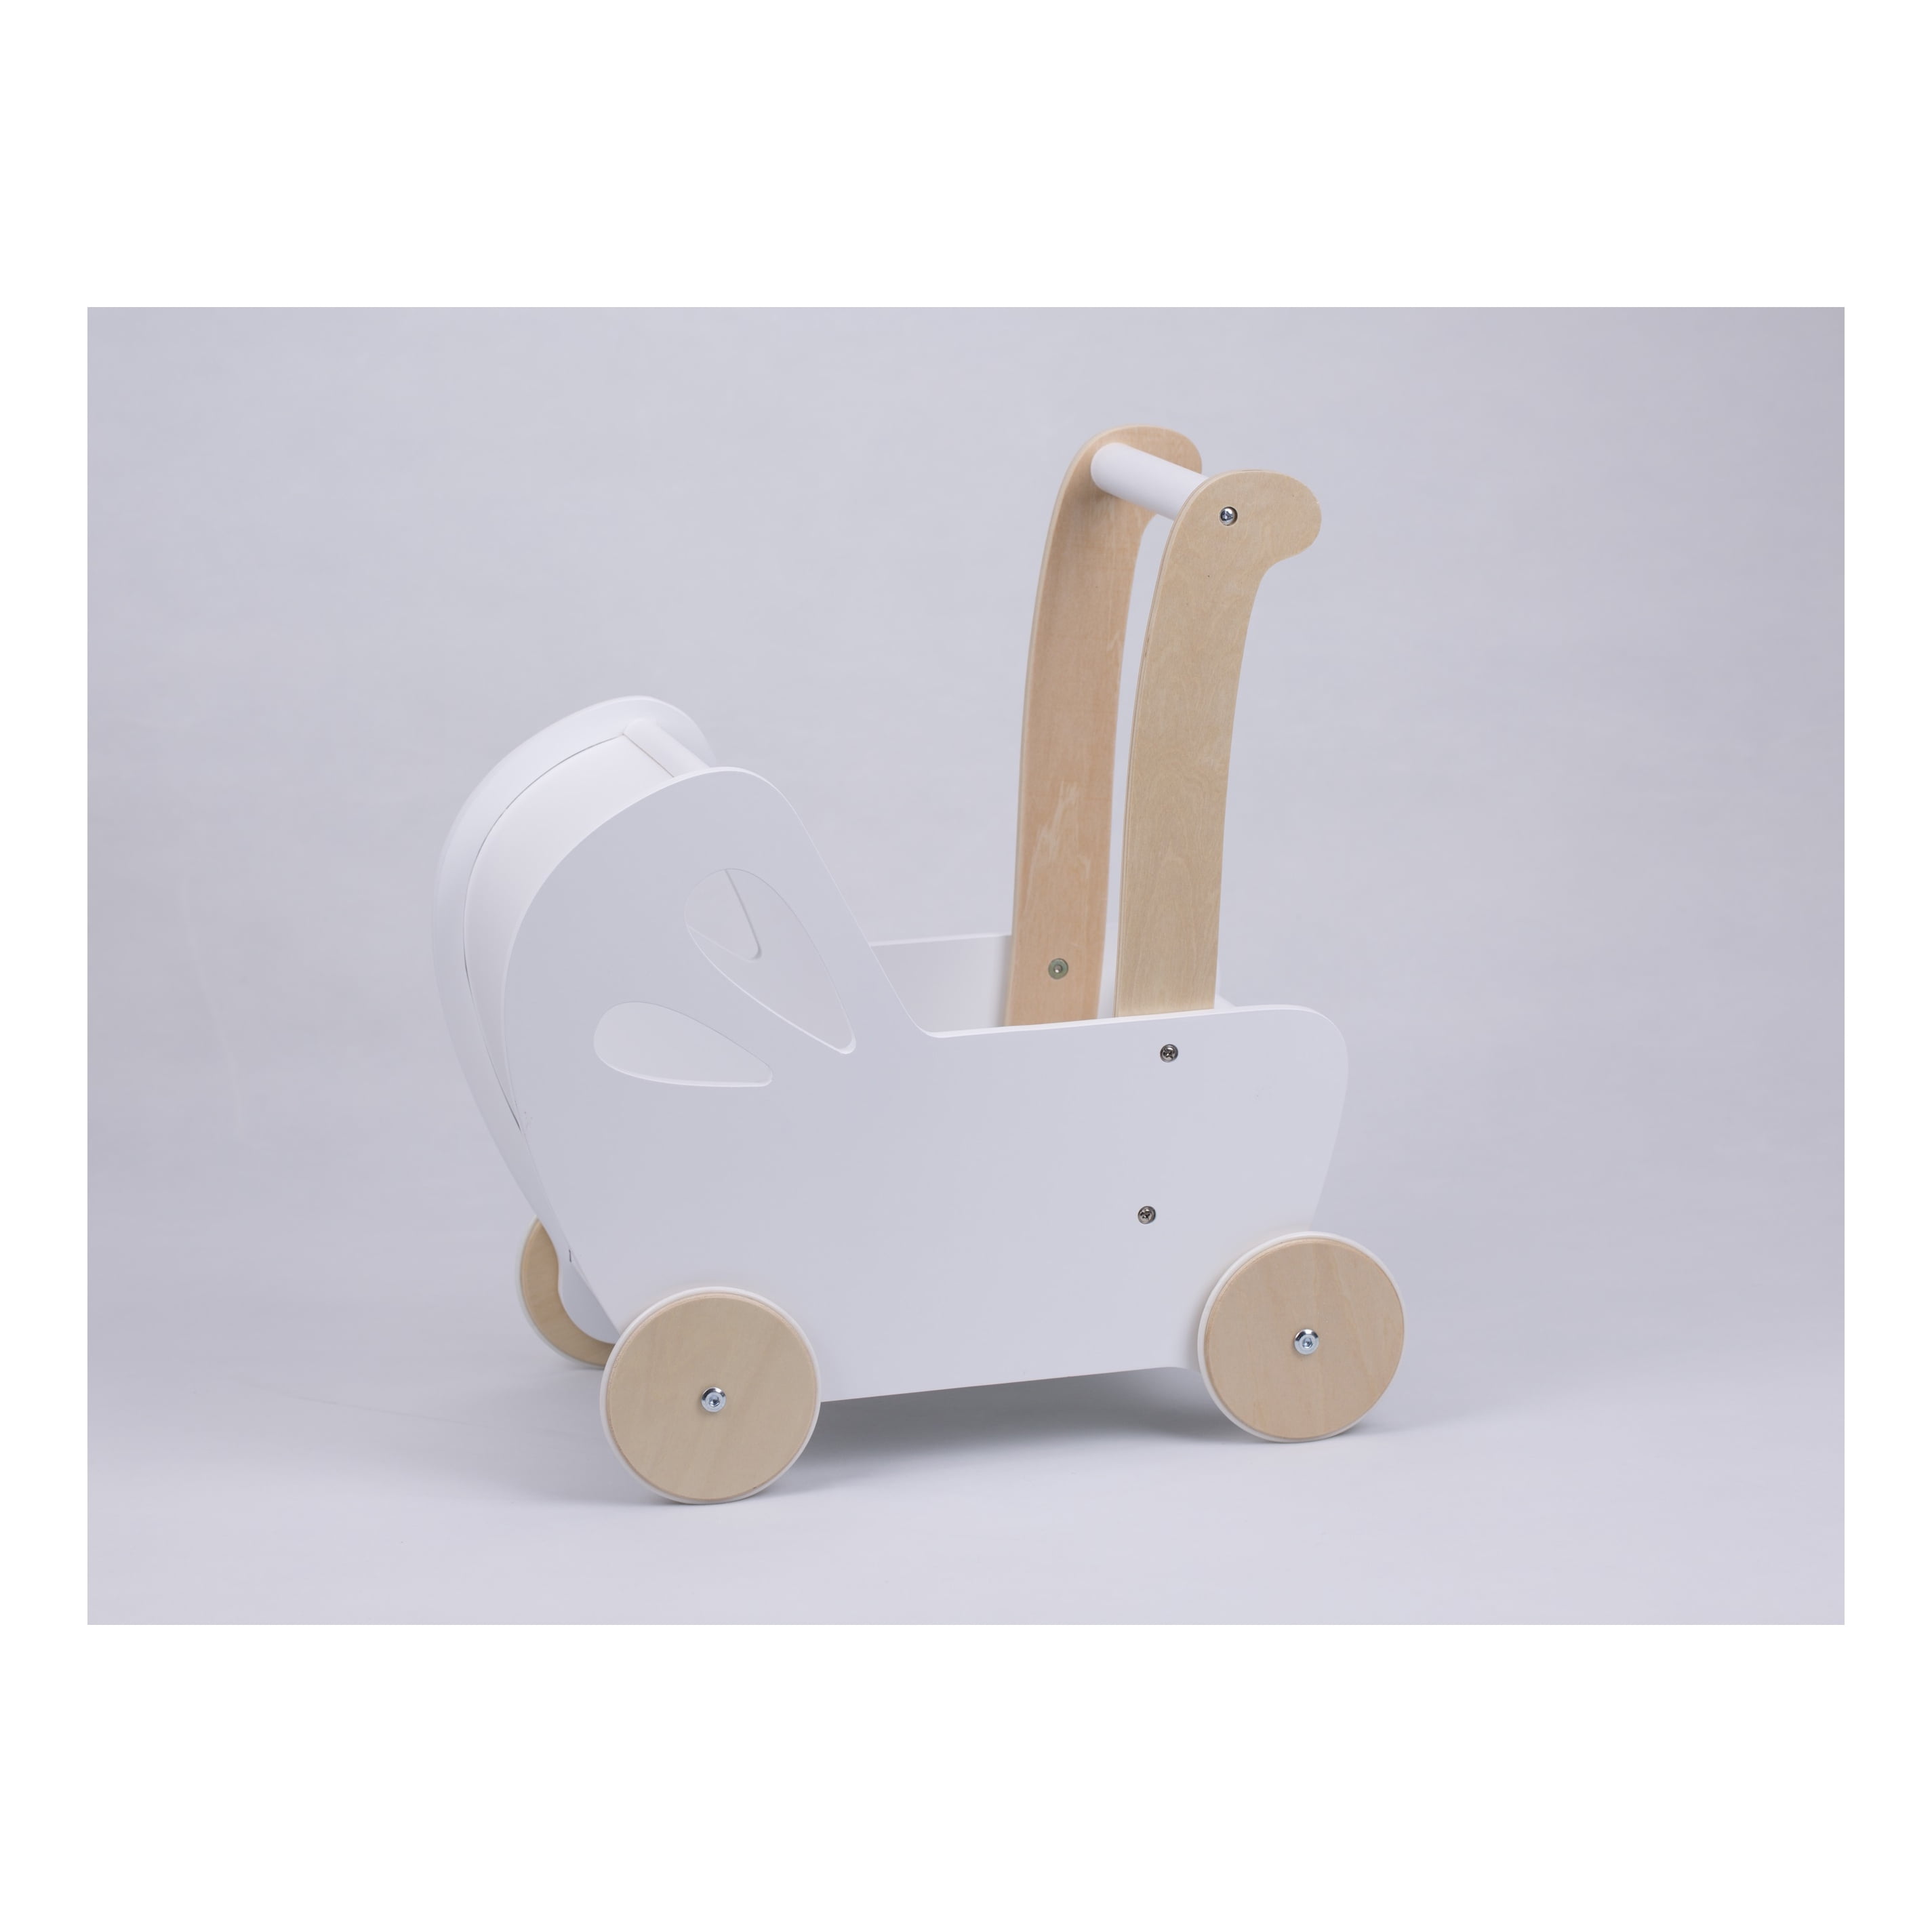 wooden pram stroller